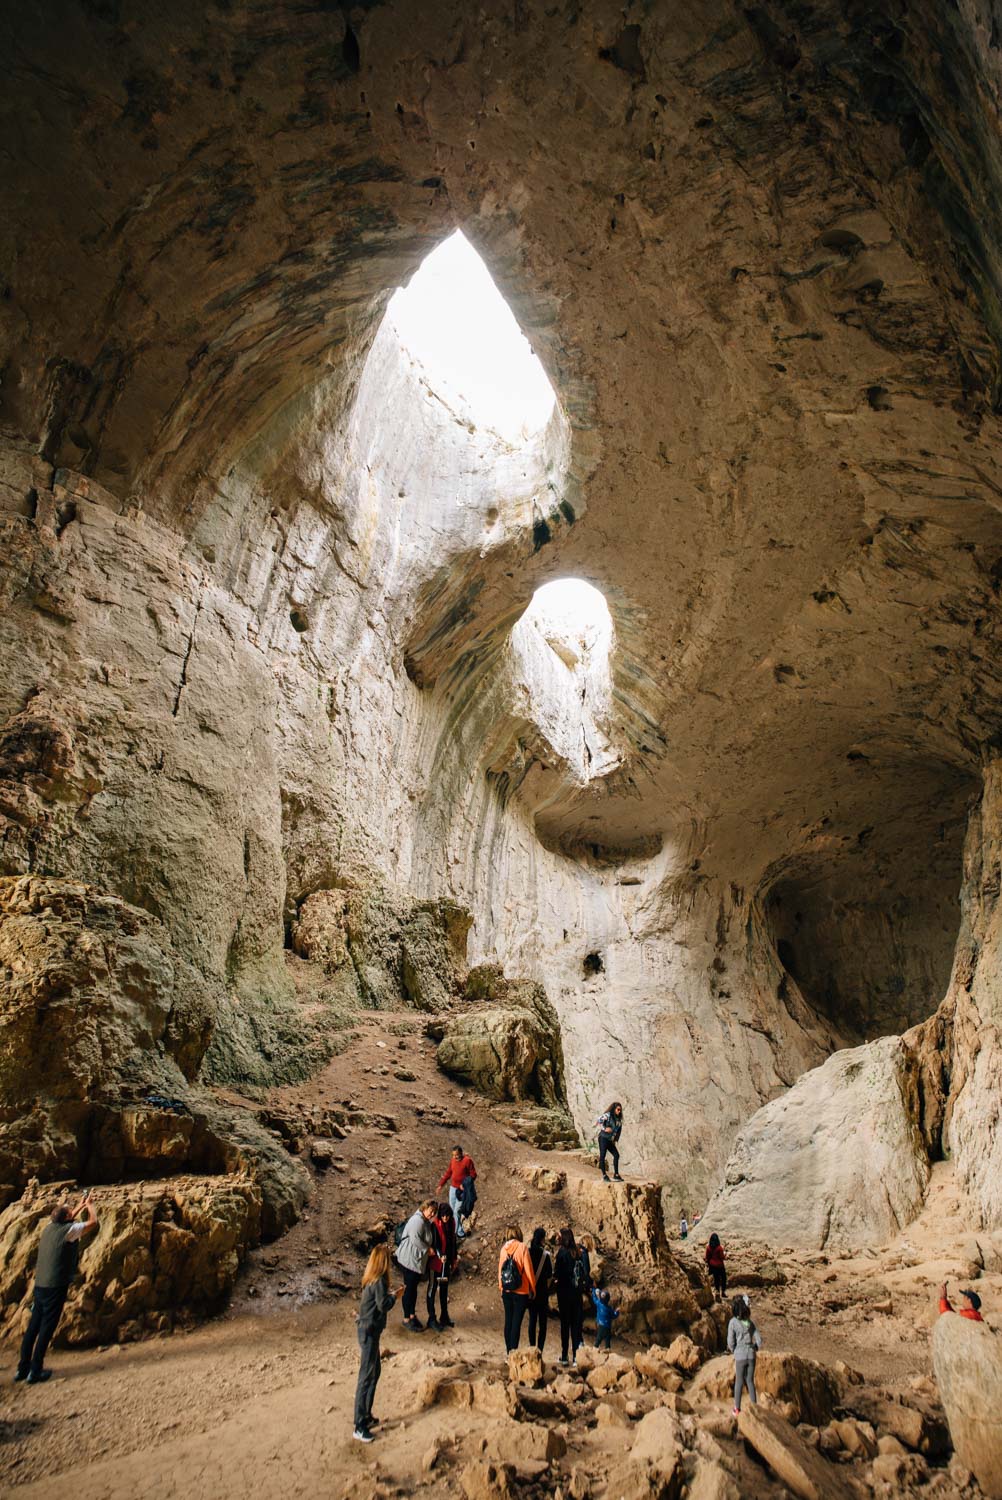  Пещера Проходна | Prohodna Cave 